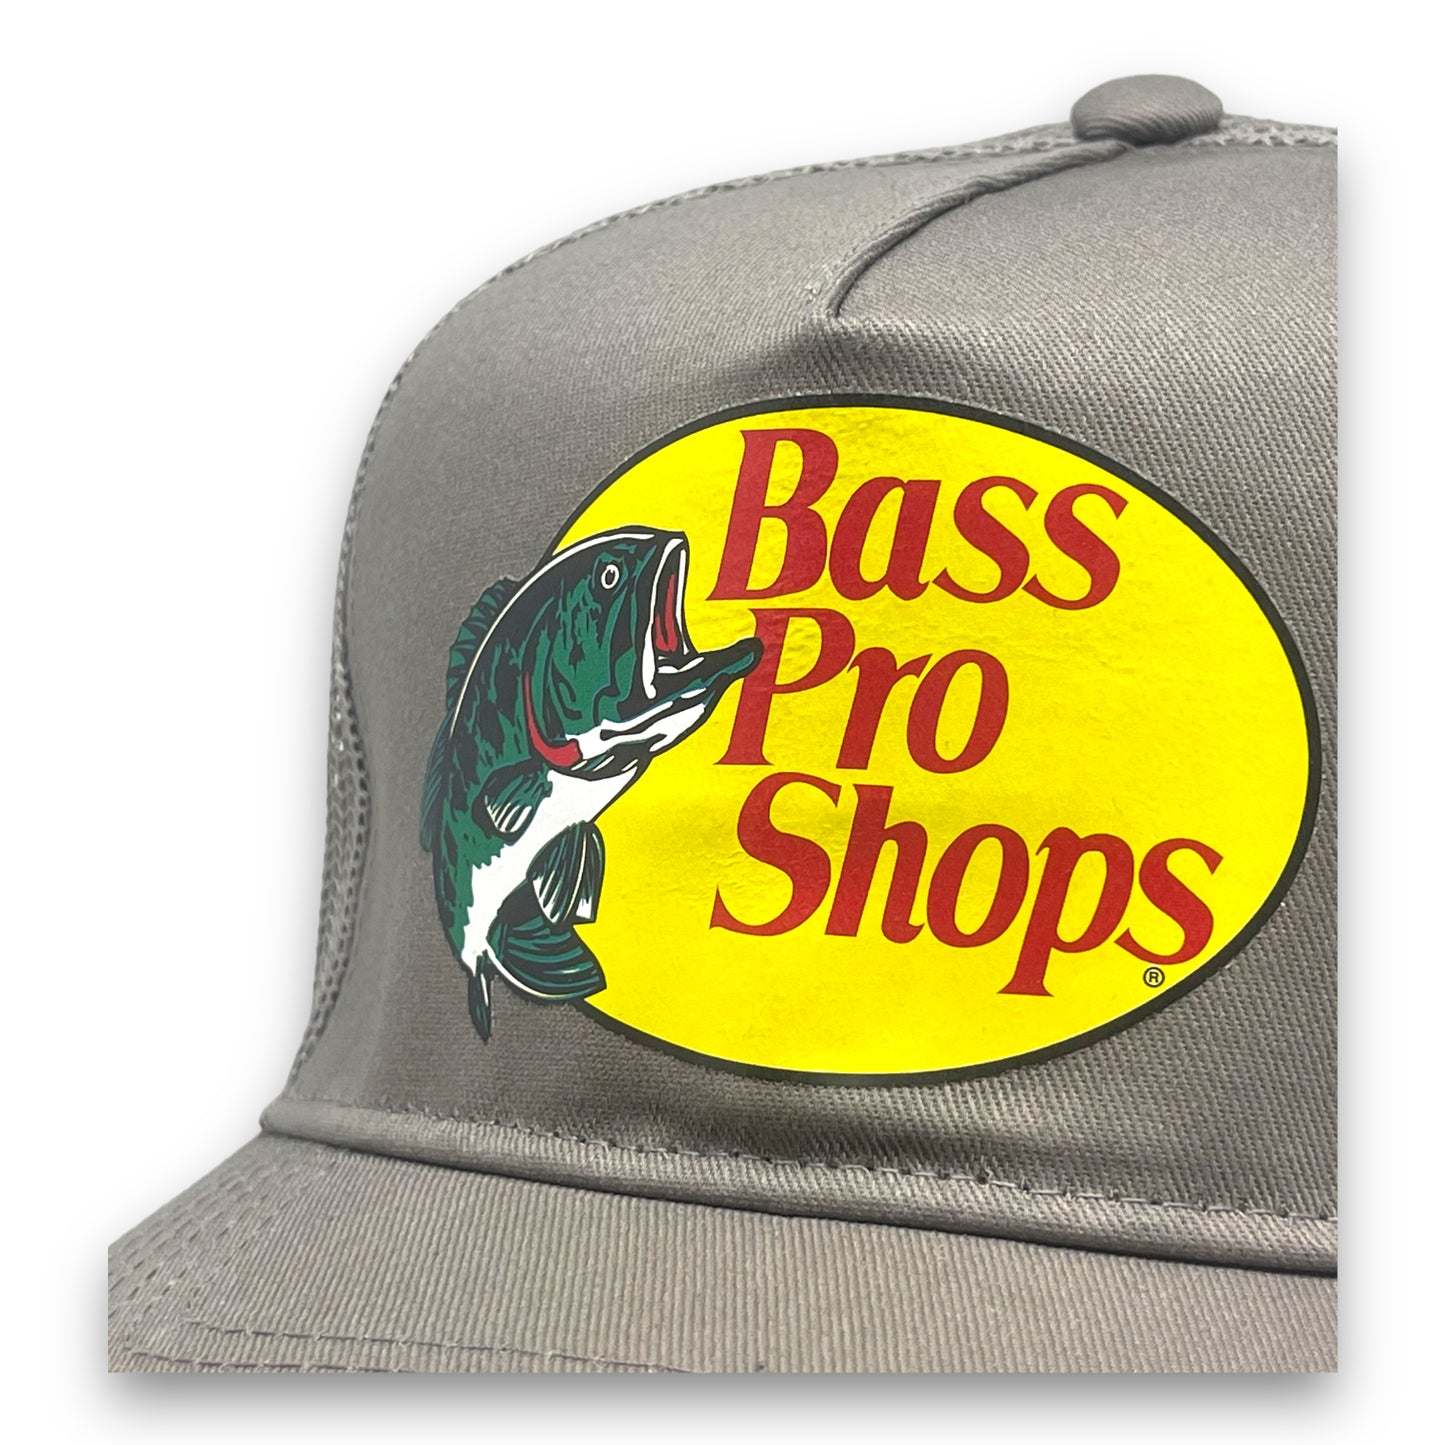 Gorra Bass Pro Shops Gris